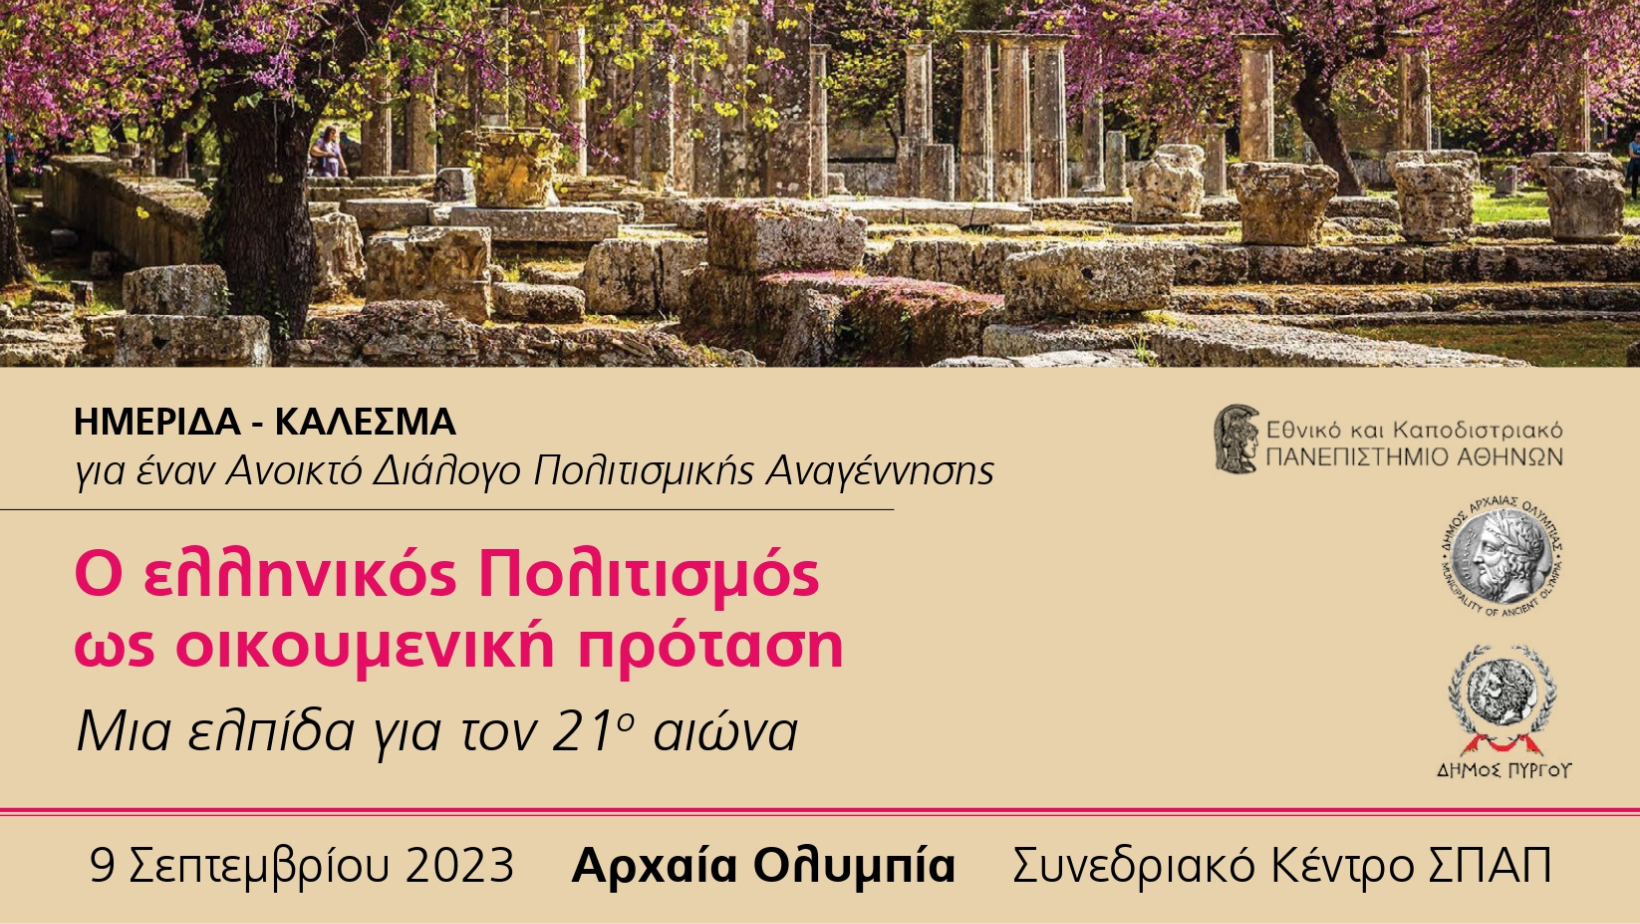 Ο ελληνικός Πολιτισμός ως οικουμενική πρόταση | IANOS MAGAZINE